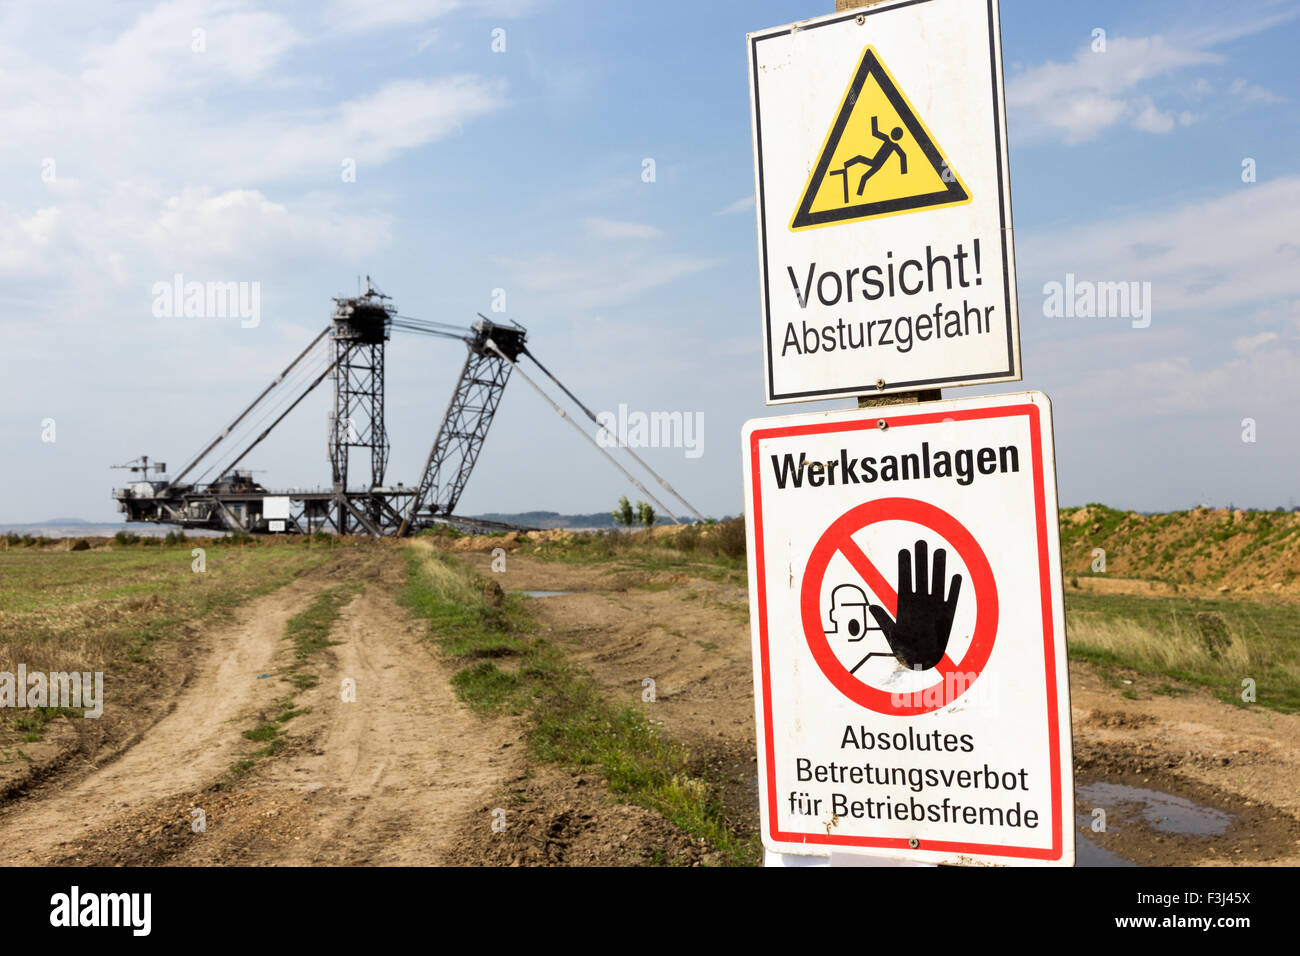 Señal de advertencia cerca de una excavadora gigante en una mina a cielo abierto cerca de Colonia. Foto de stock